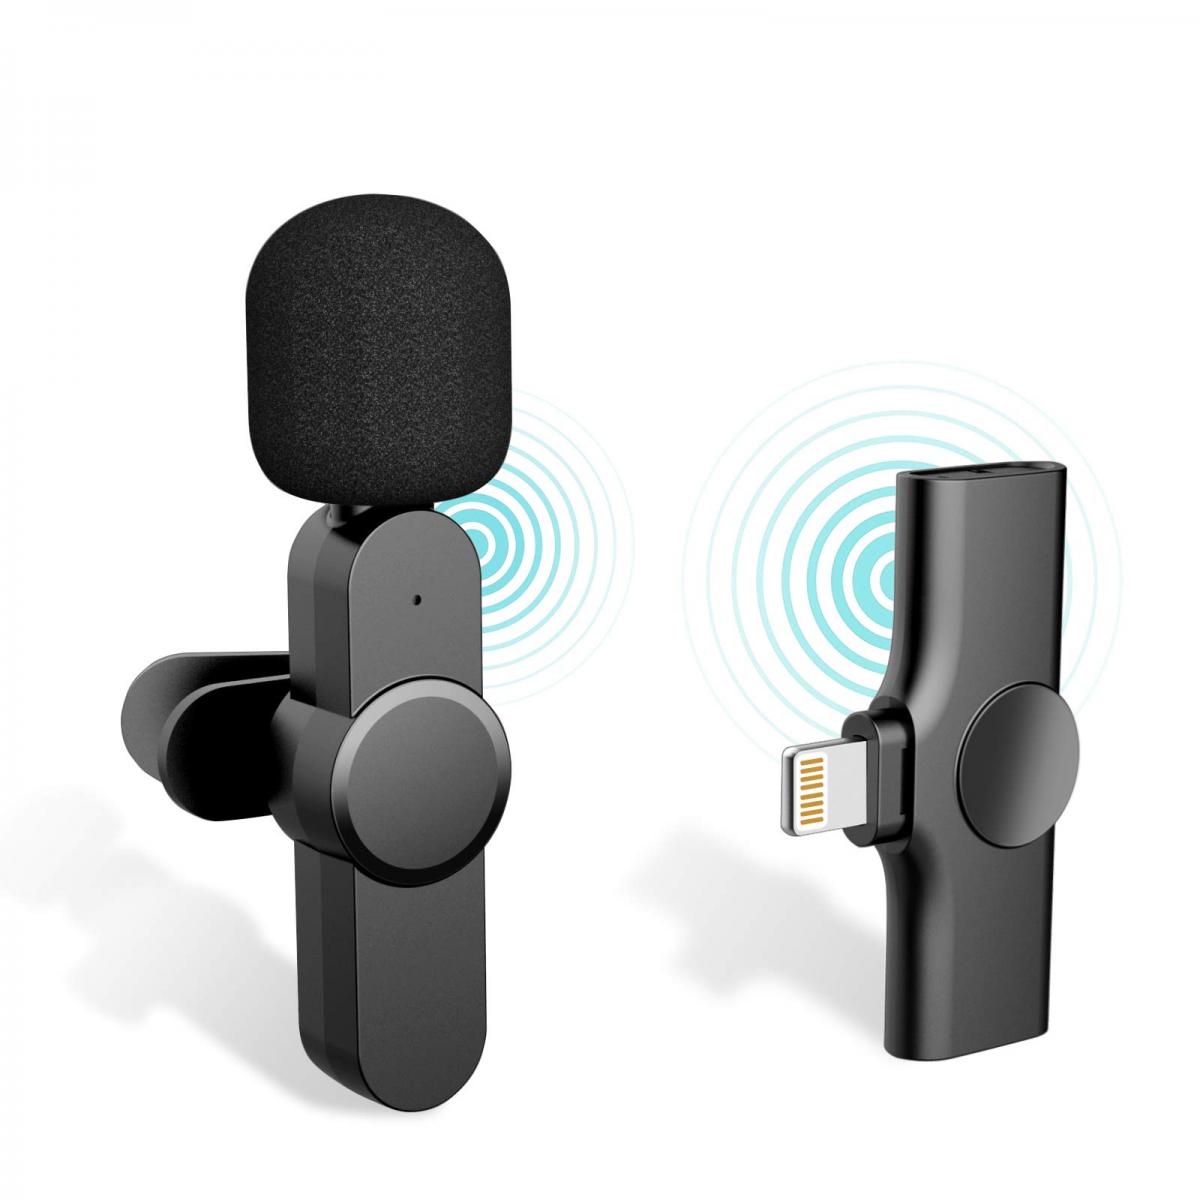 Mini micrófono inalámbrico 3 en 1 para iPhone, Android y cámara, micró -  VIRTUAL MUEBLES